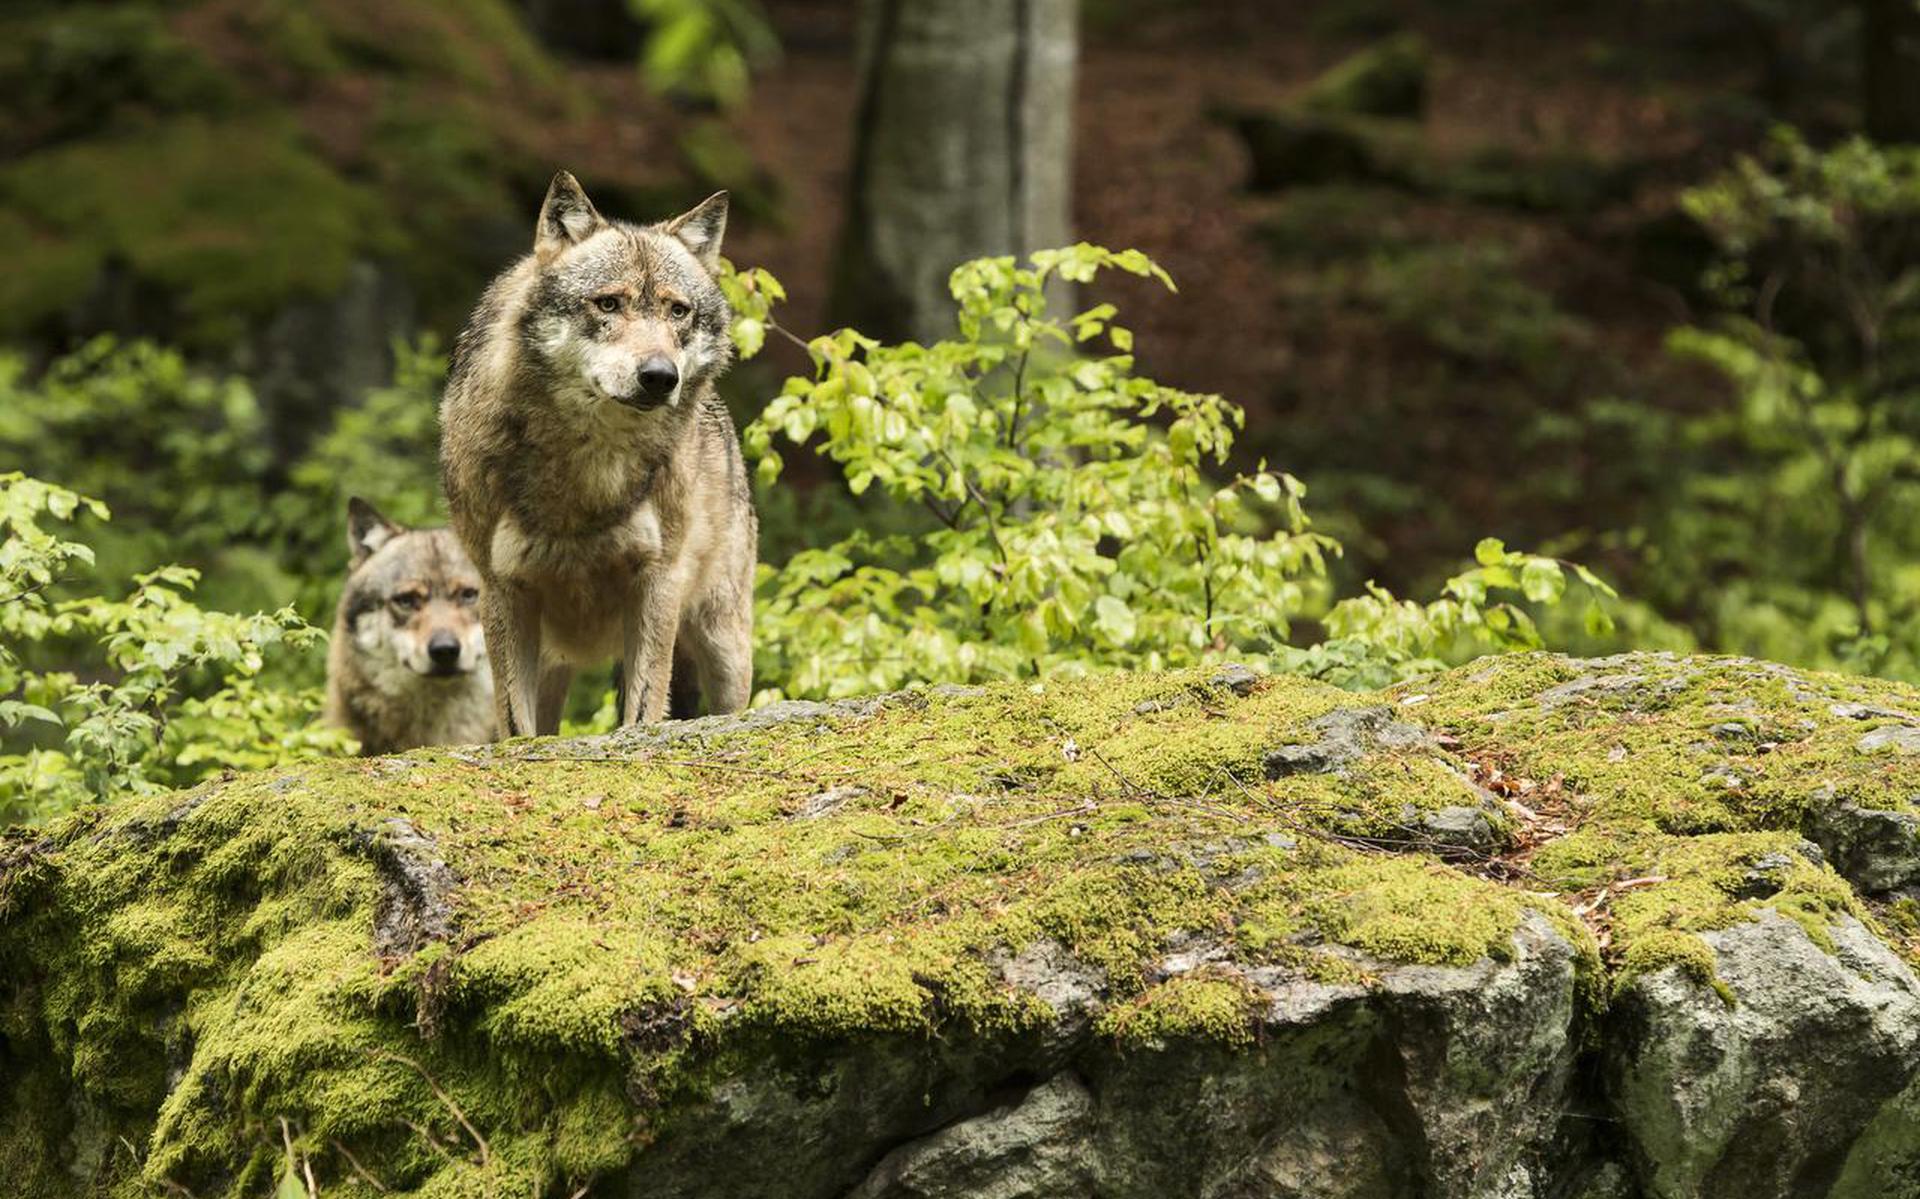  ‘De wolf heeft zijn plek in de voedselketen.’ FOTO SHUTTERSTOCK